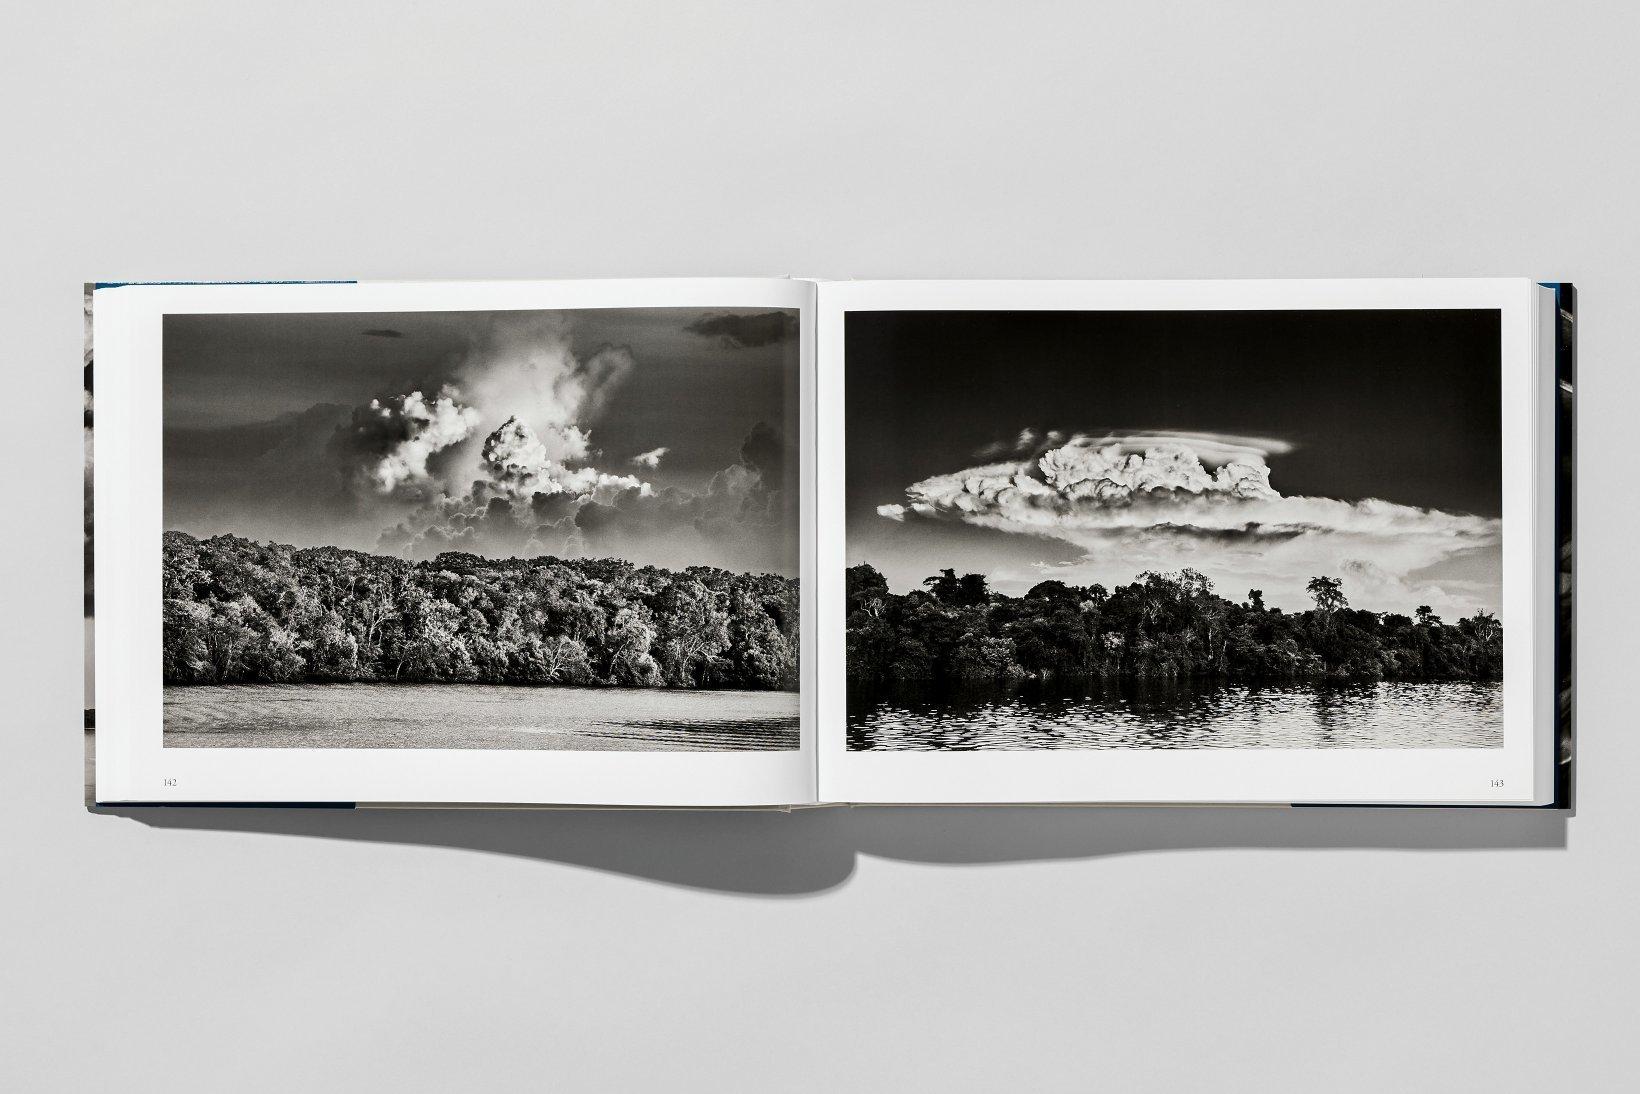 Paper Sebastião Salgado, Amazônia, Photography Book